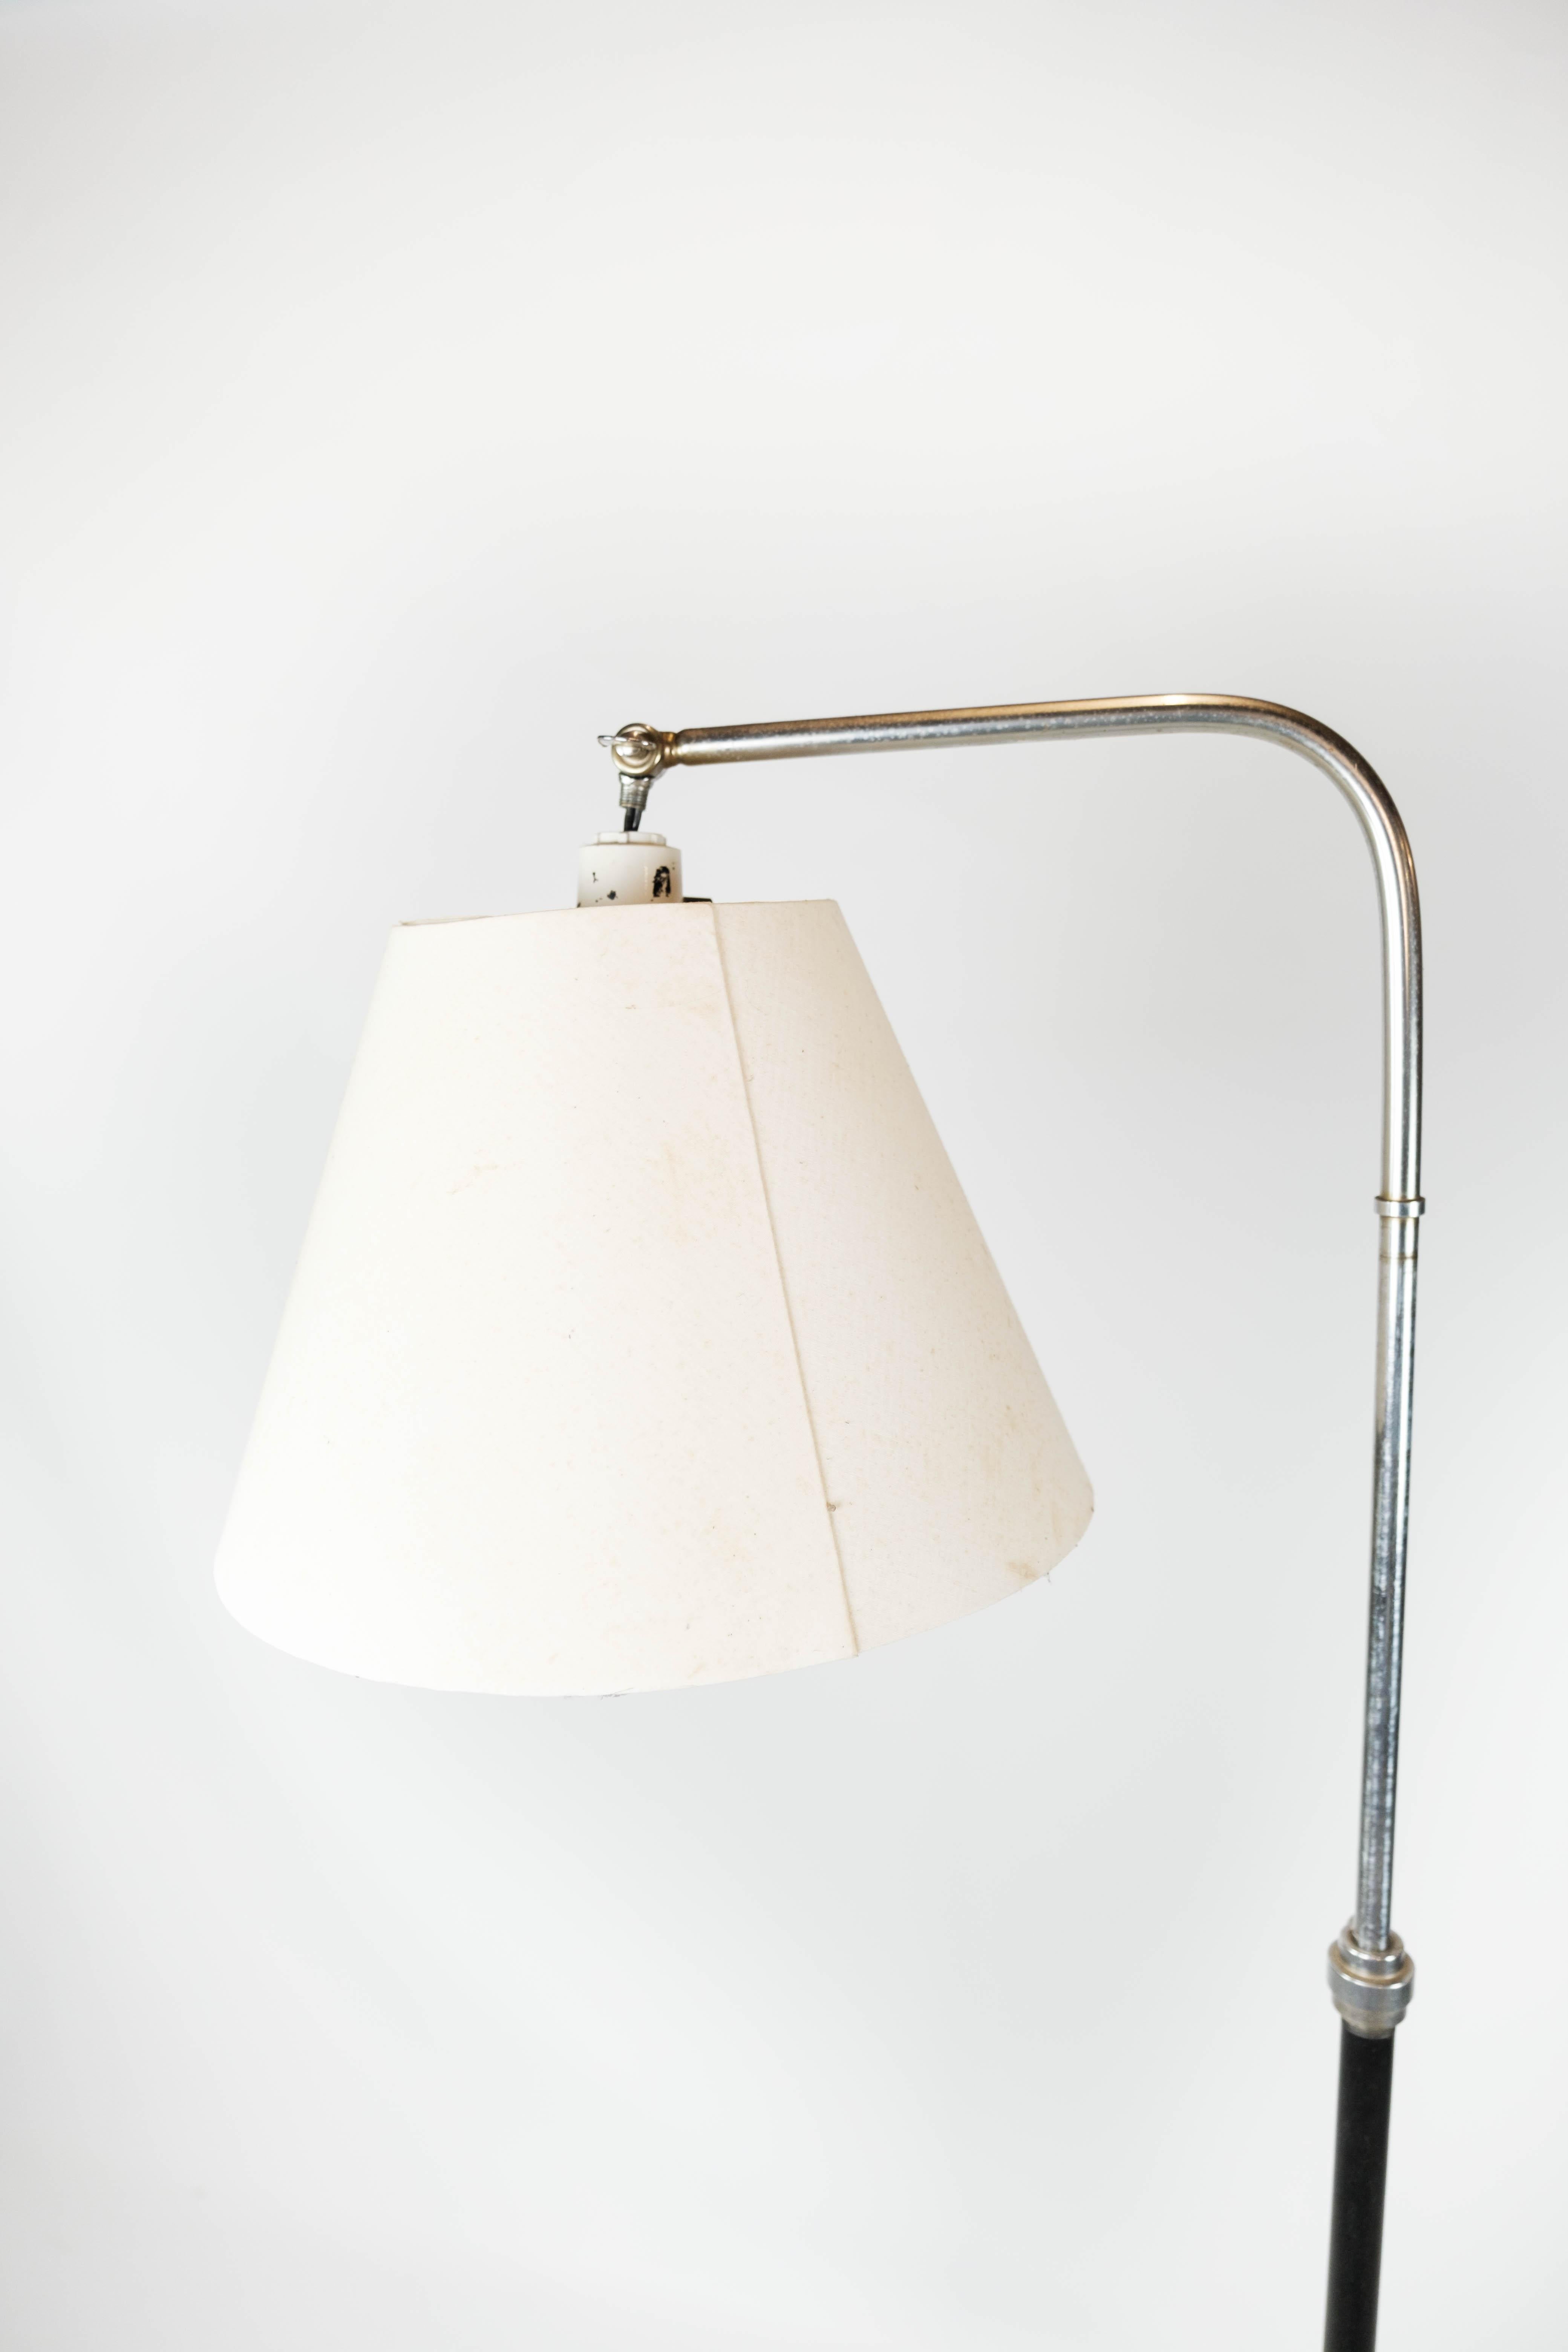 Stehleuchte aus verchromtem und schwarz lackiertem Metall mit dänischem Design aus den 1970er Jahren. Die Lampe ist in tollem Vintage-Zustand.